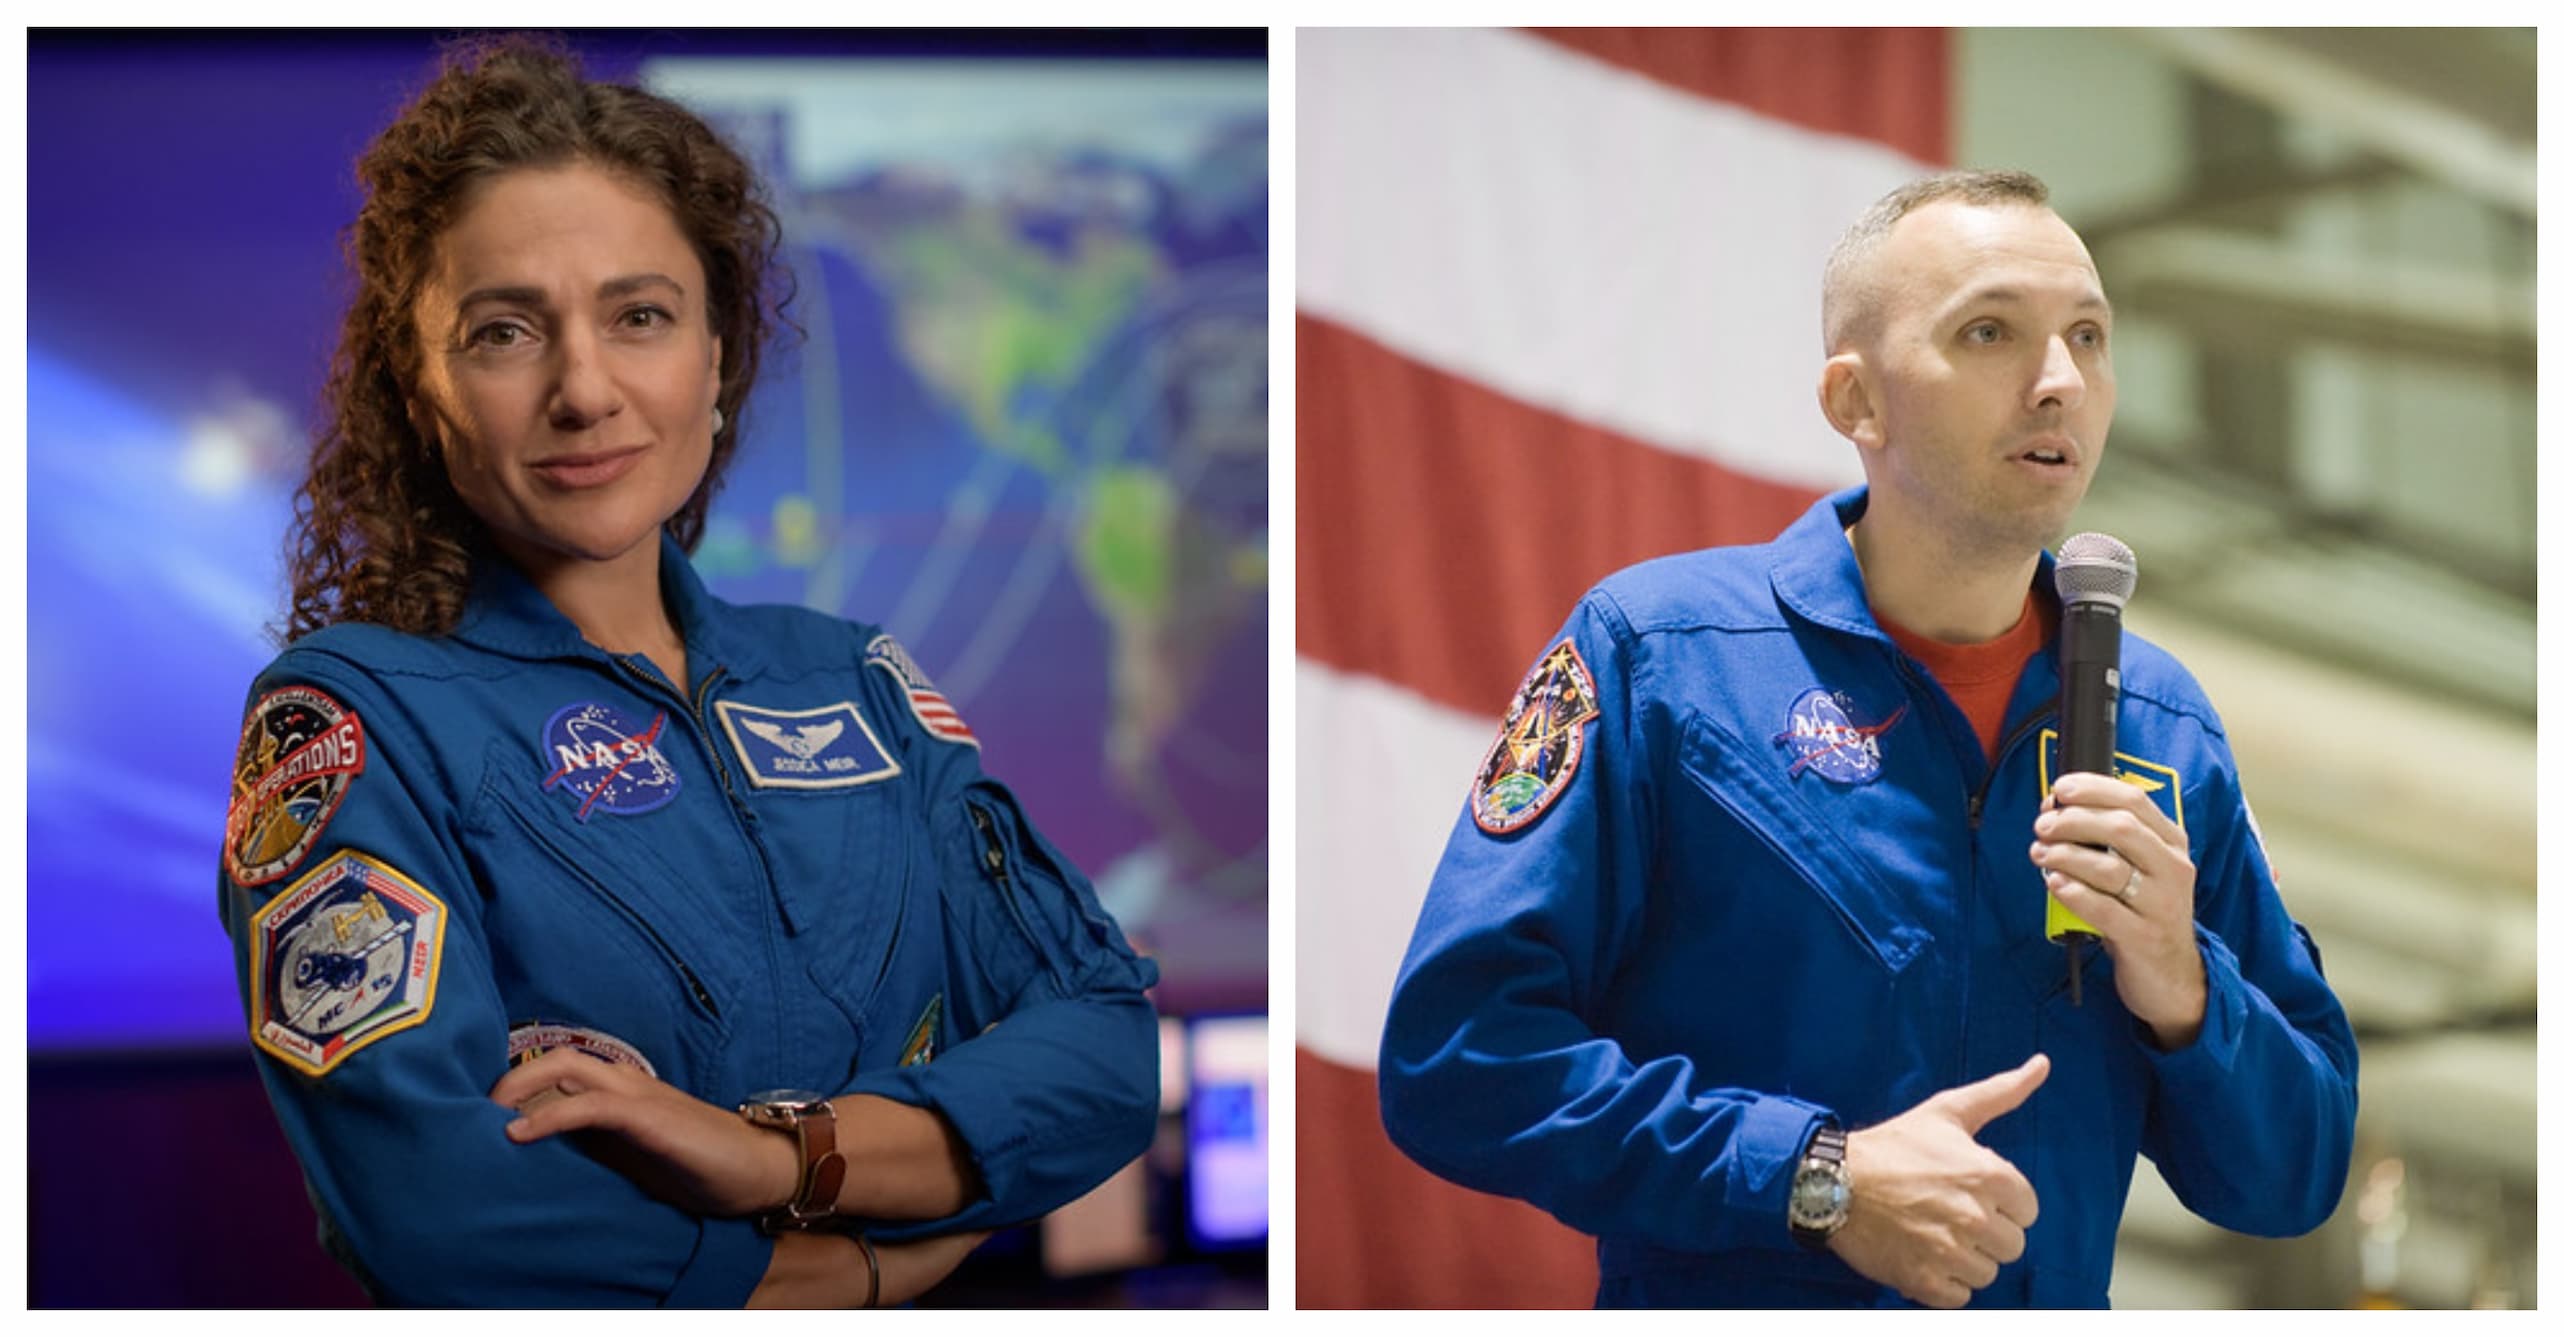 רנדי ברזניק וג'סיקה מאיר. קרדיט: NASA